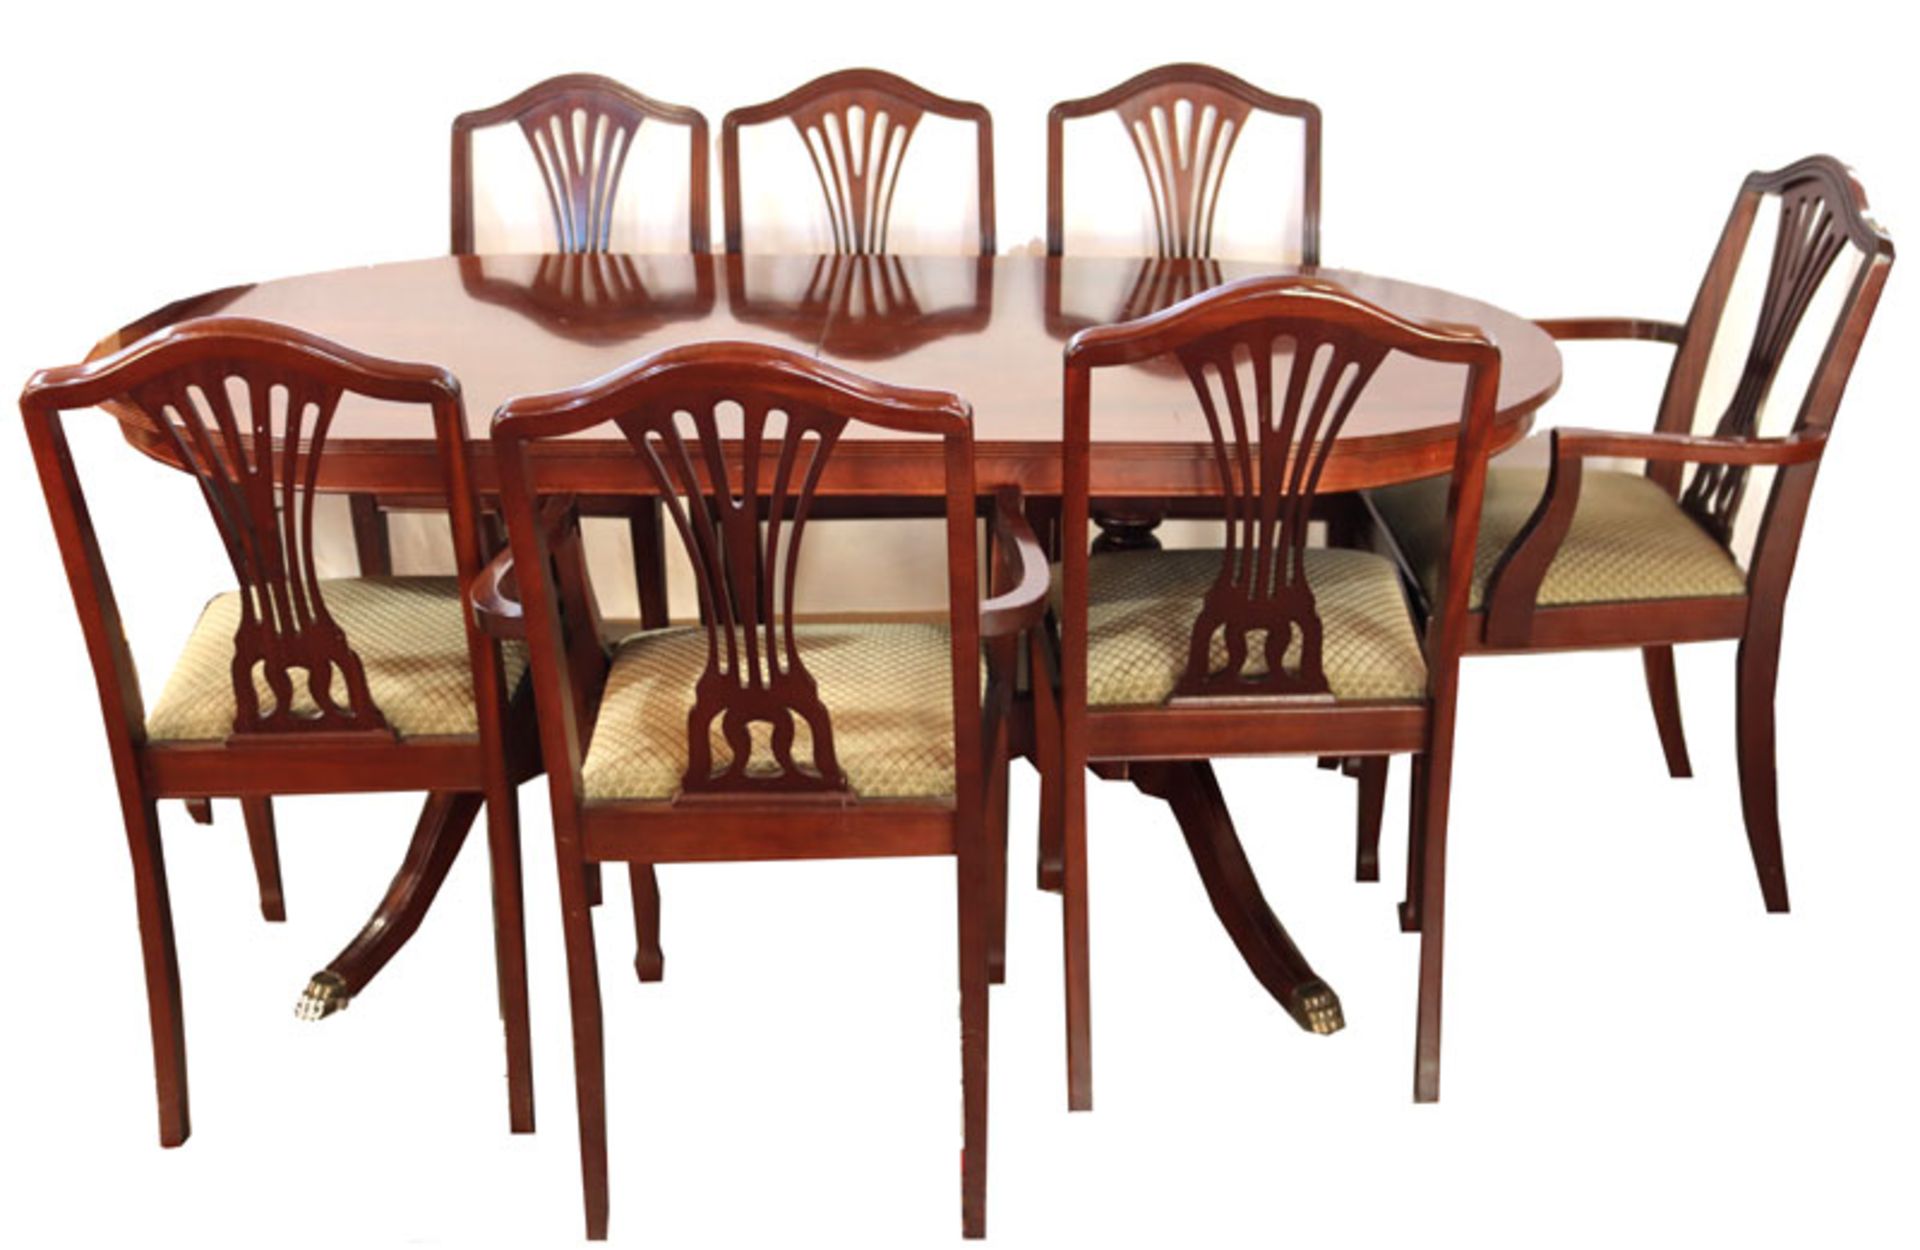 Sitzgarnitur: Ovaler Tisch auf geschwungenen Beinen, ausziehbar, H 74 cm, L 180/246 cm, B 90 cm, mit